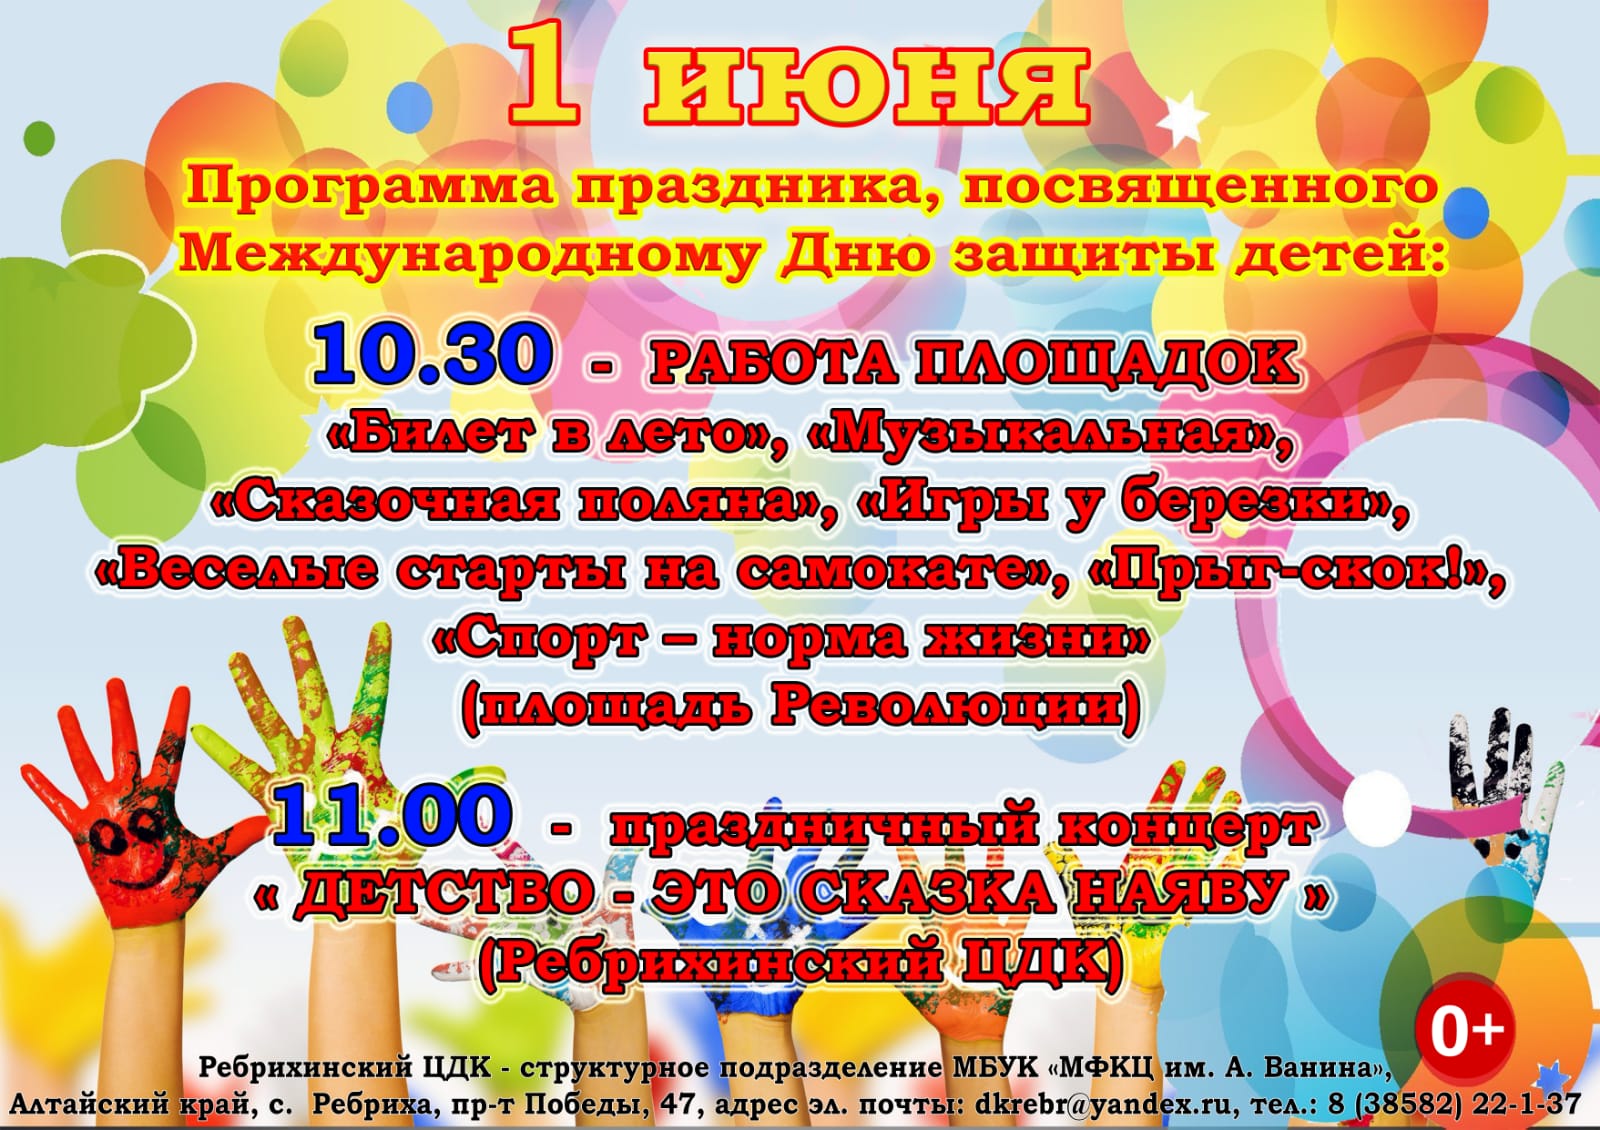 Программа праздника, посвященного Международному Дню защиты детей.